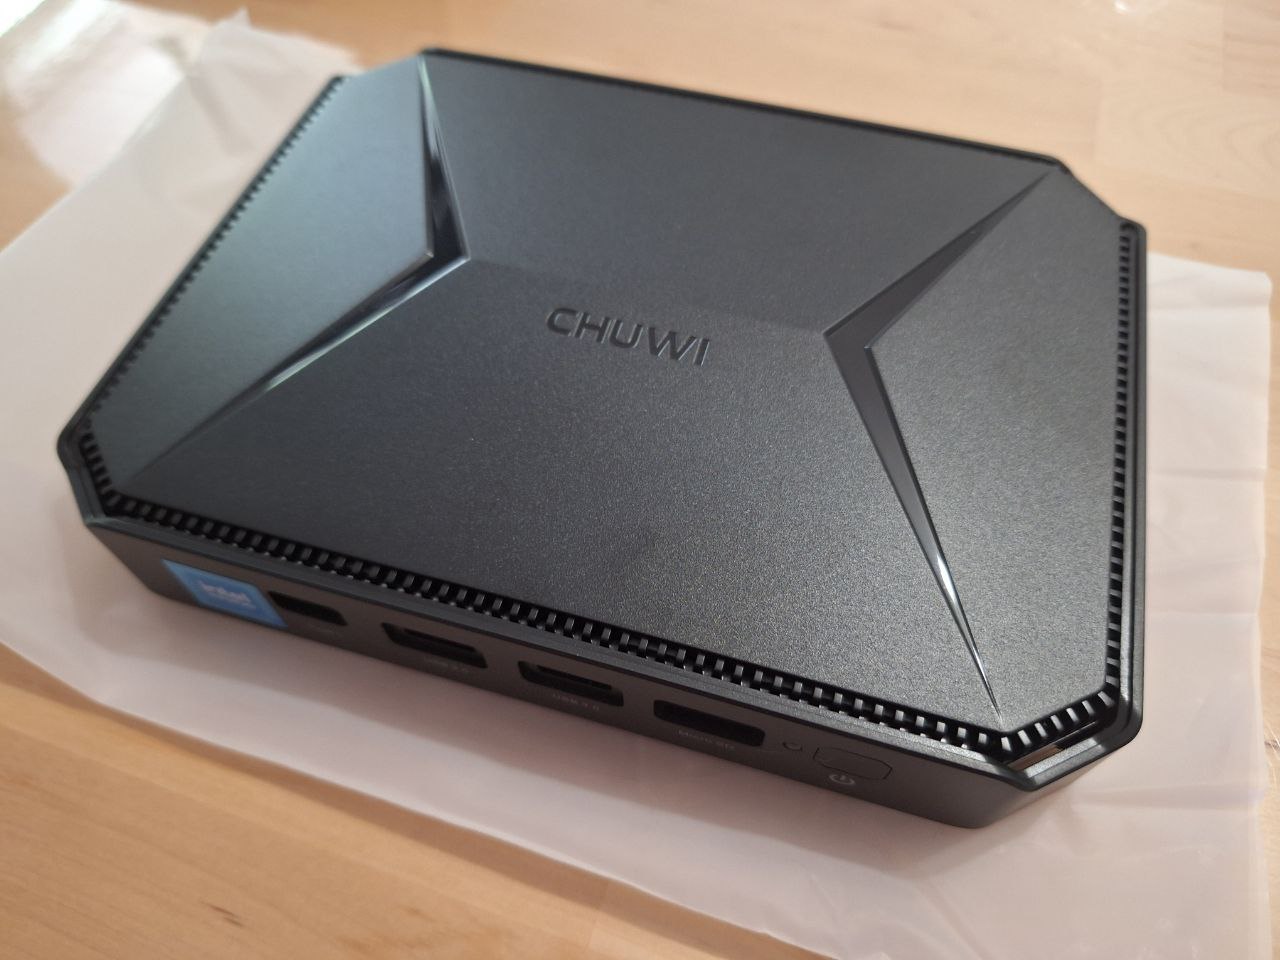 Análisis Chuwi HeroBox - Un mini-PC con gran versatilidad